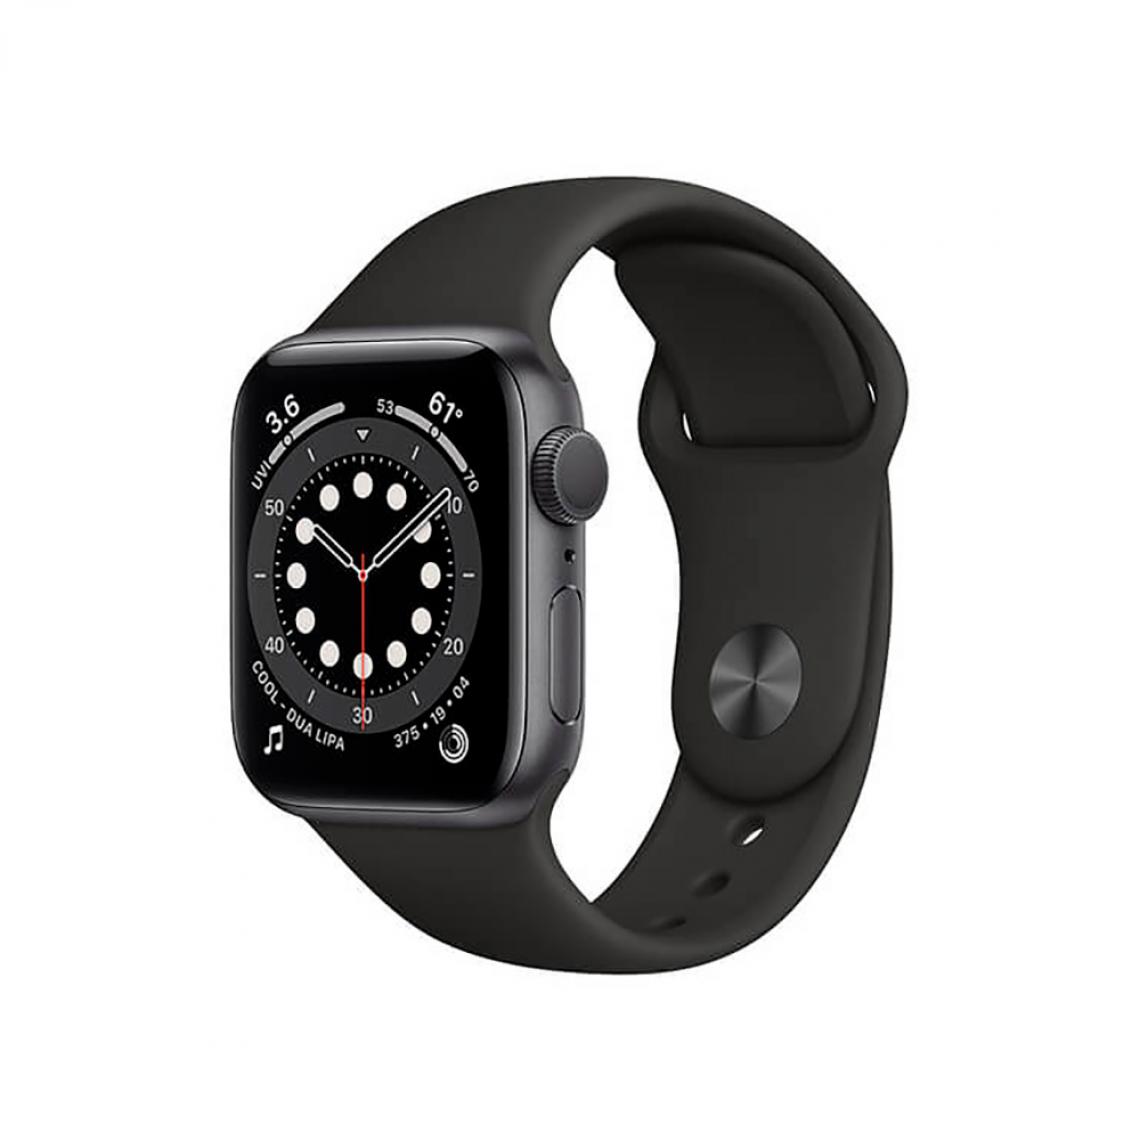 Apple - Apple Watch Series 6 (GPS + Cellulaire), 44mm Aluminium Gris de l'Espace et Bracelet Sportif Noir - Apple Watch